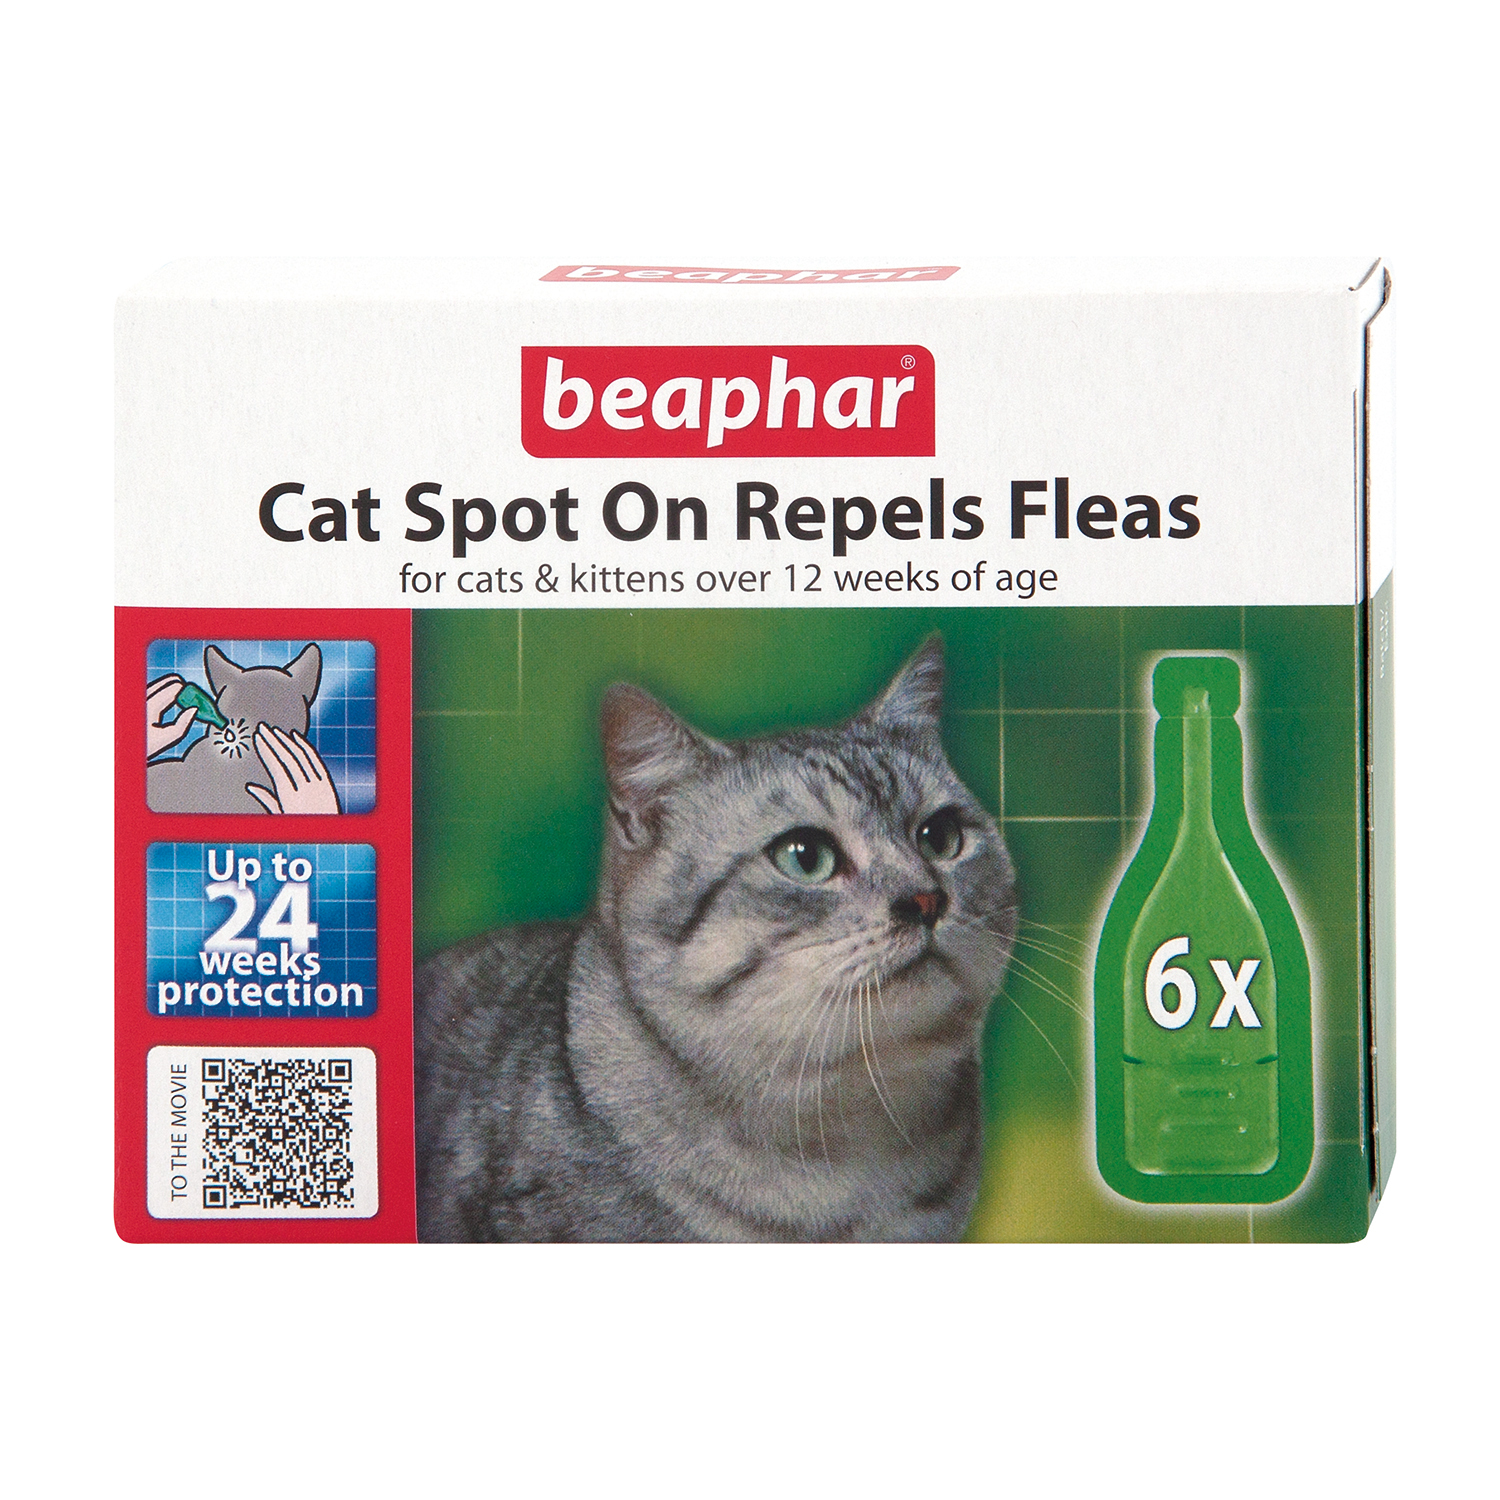 Beaphar Spot On Cat Flea Repellent 6 Pack Image 1